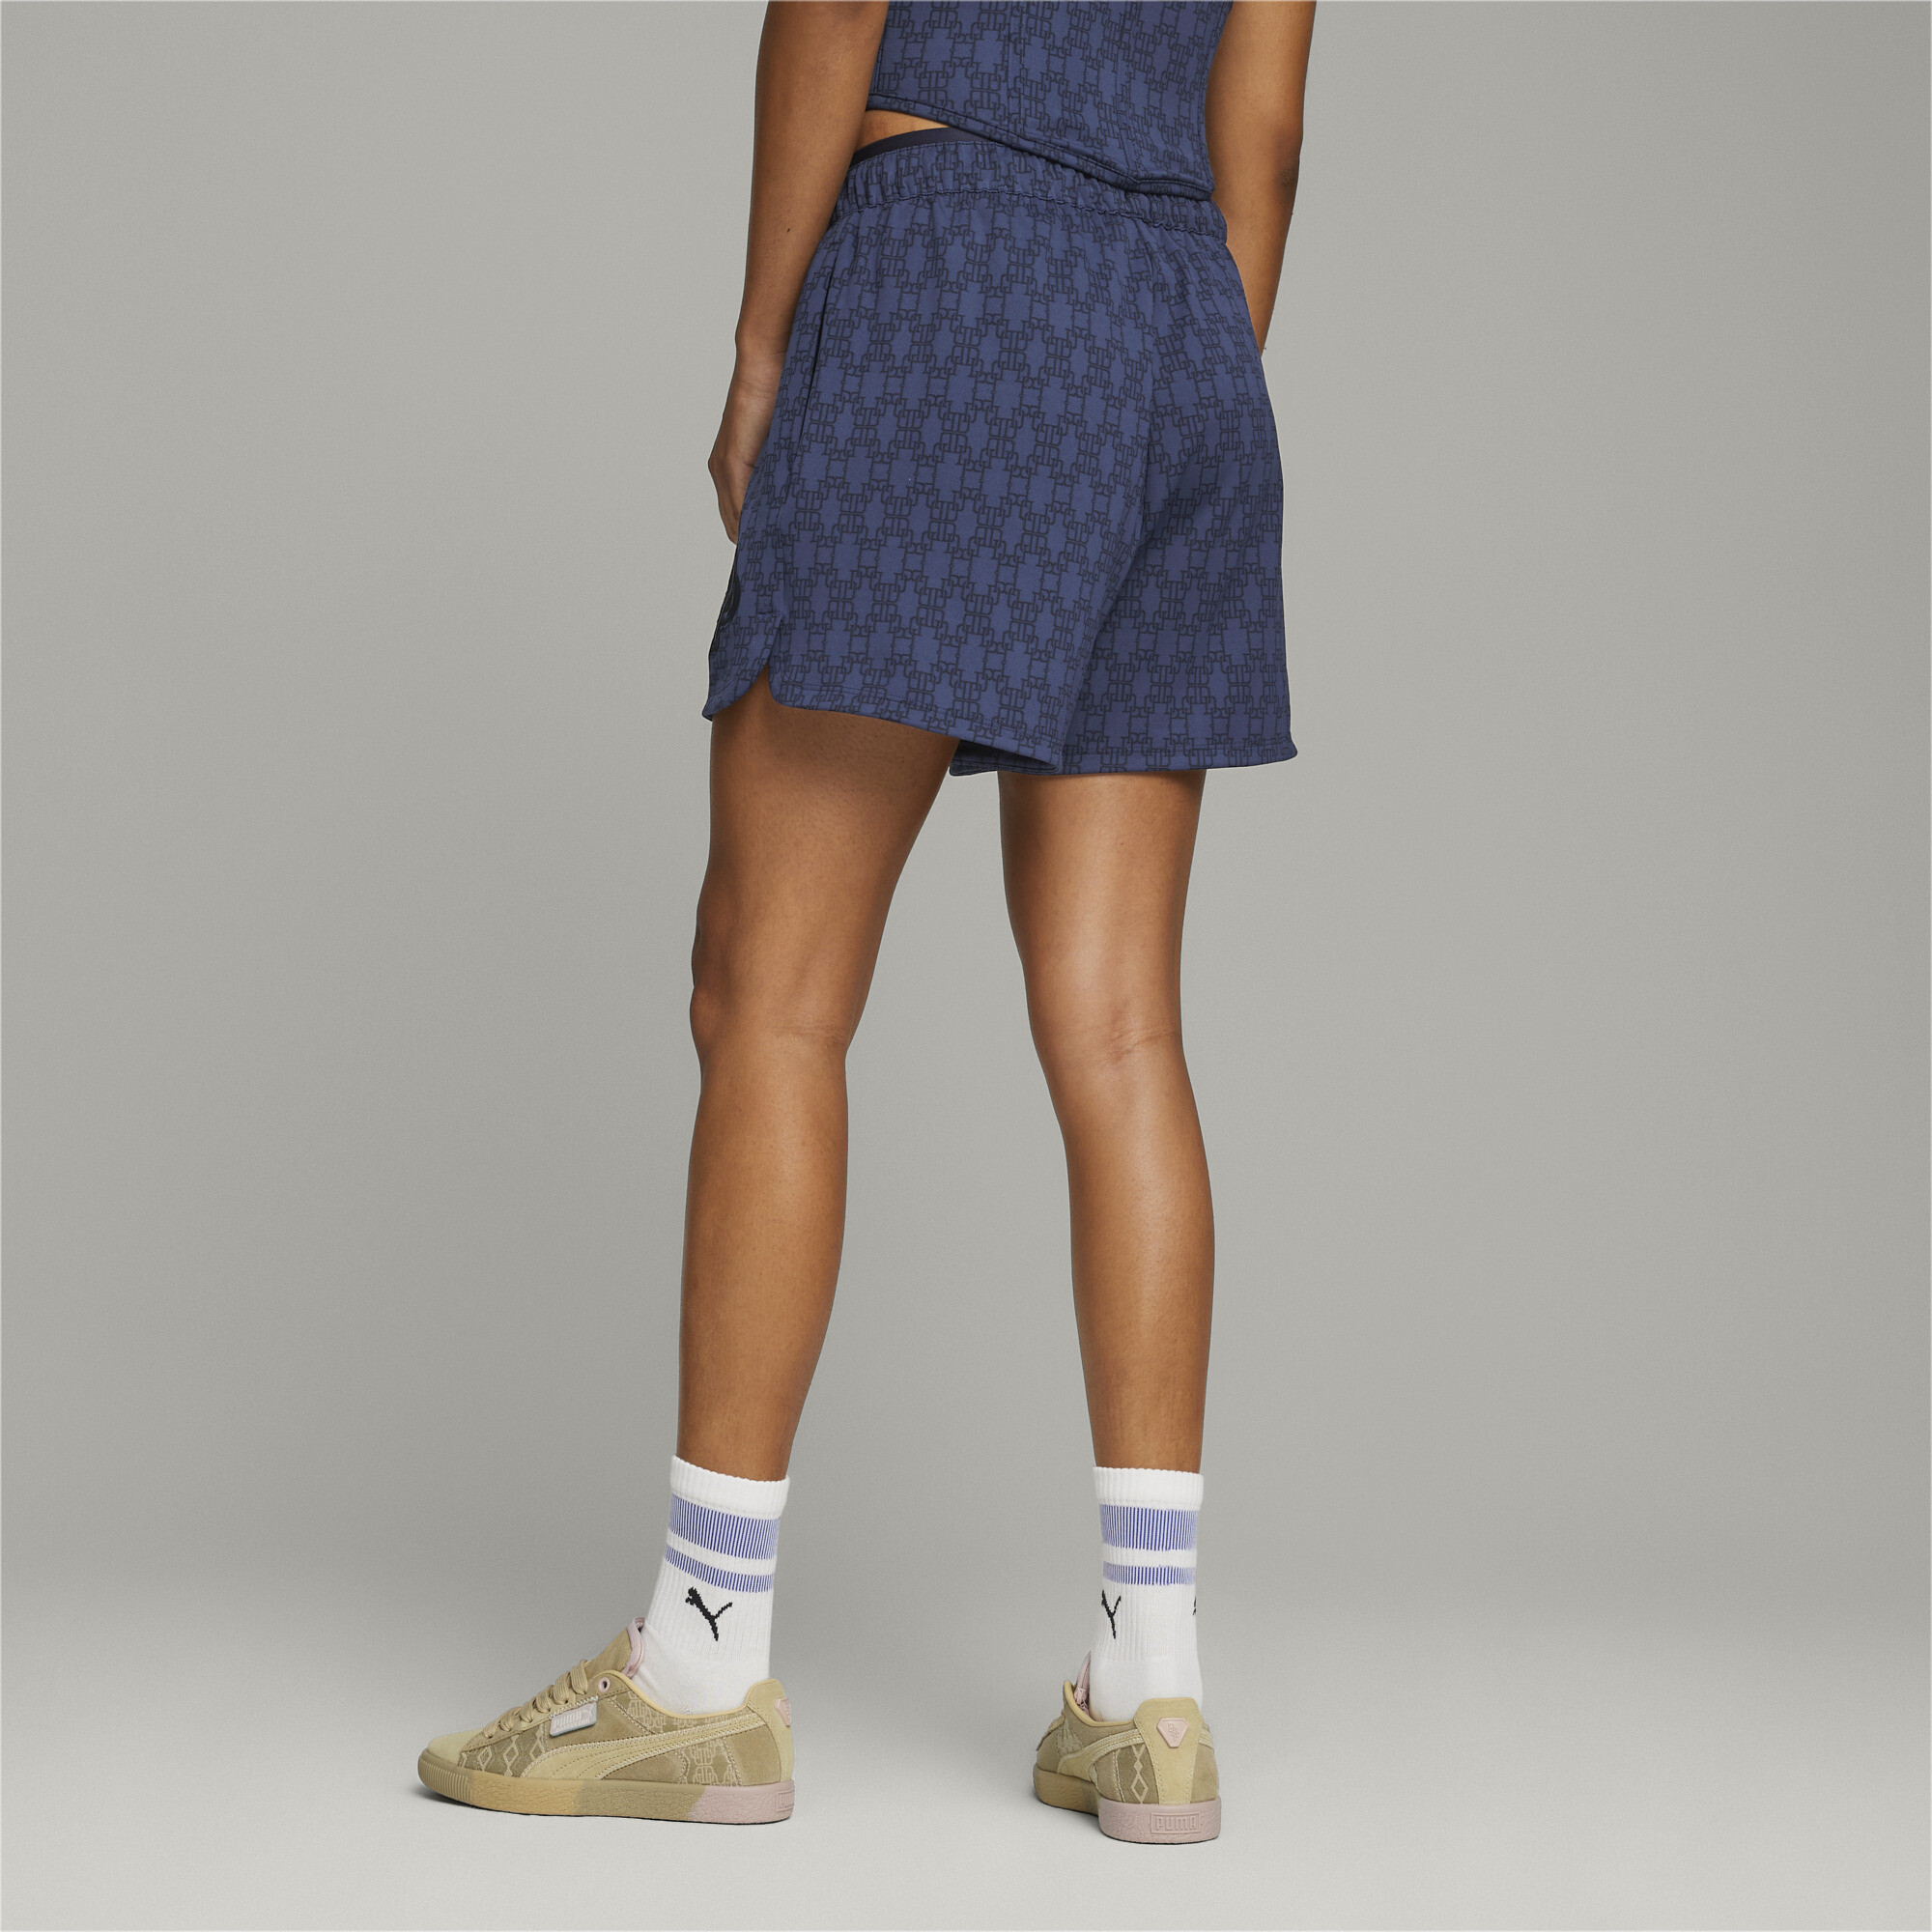 Women's PUMA X DAPPER DAN Shorts In Blue, Size Medium